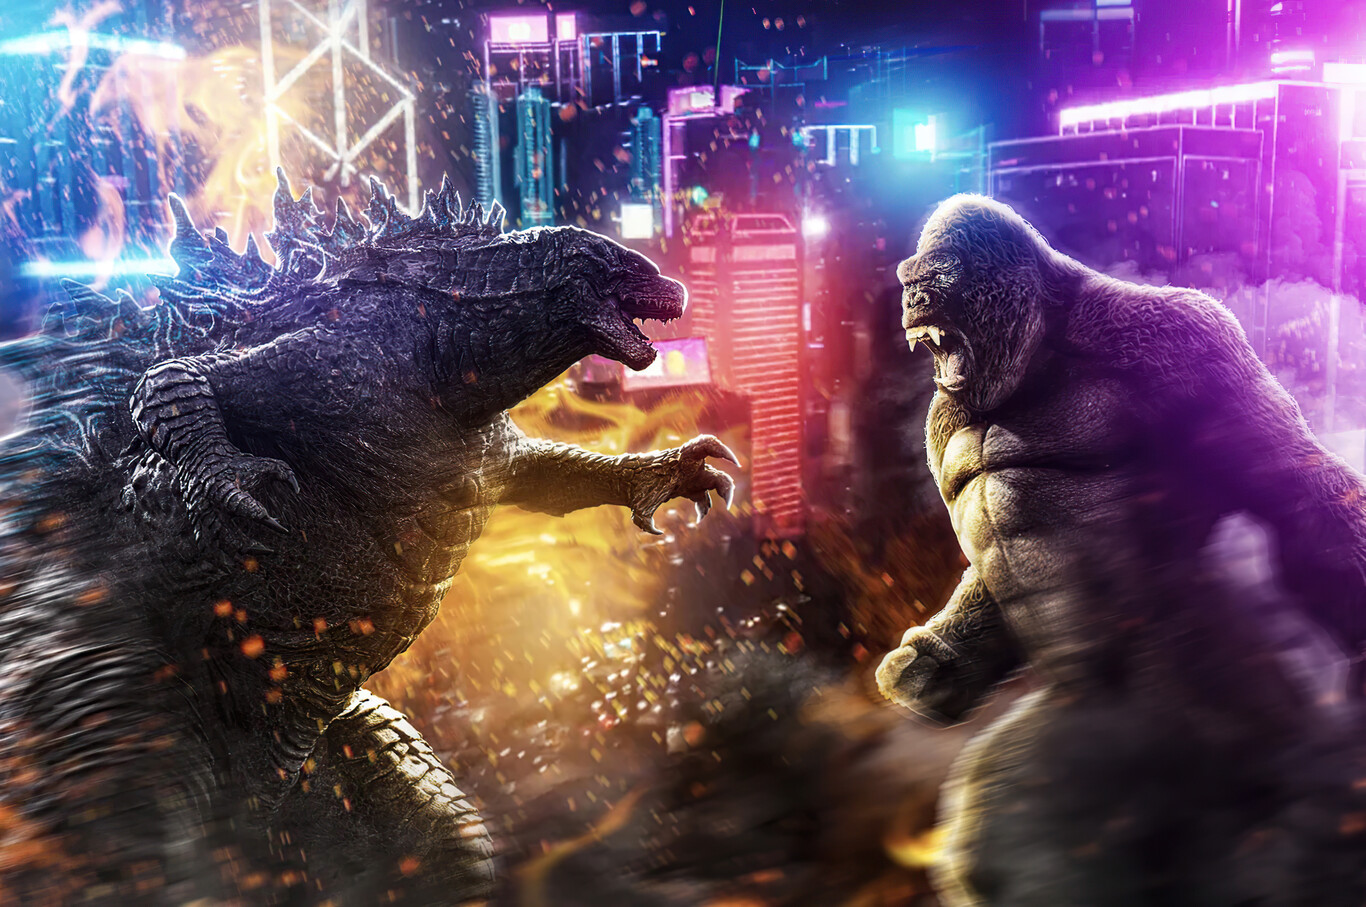 Godzilla versus Kong